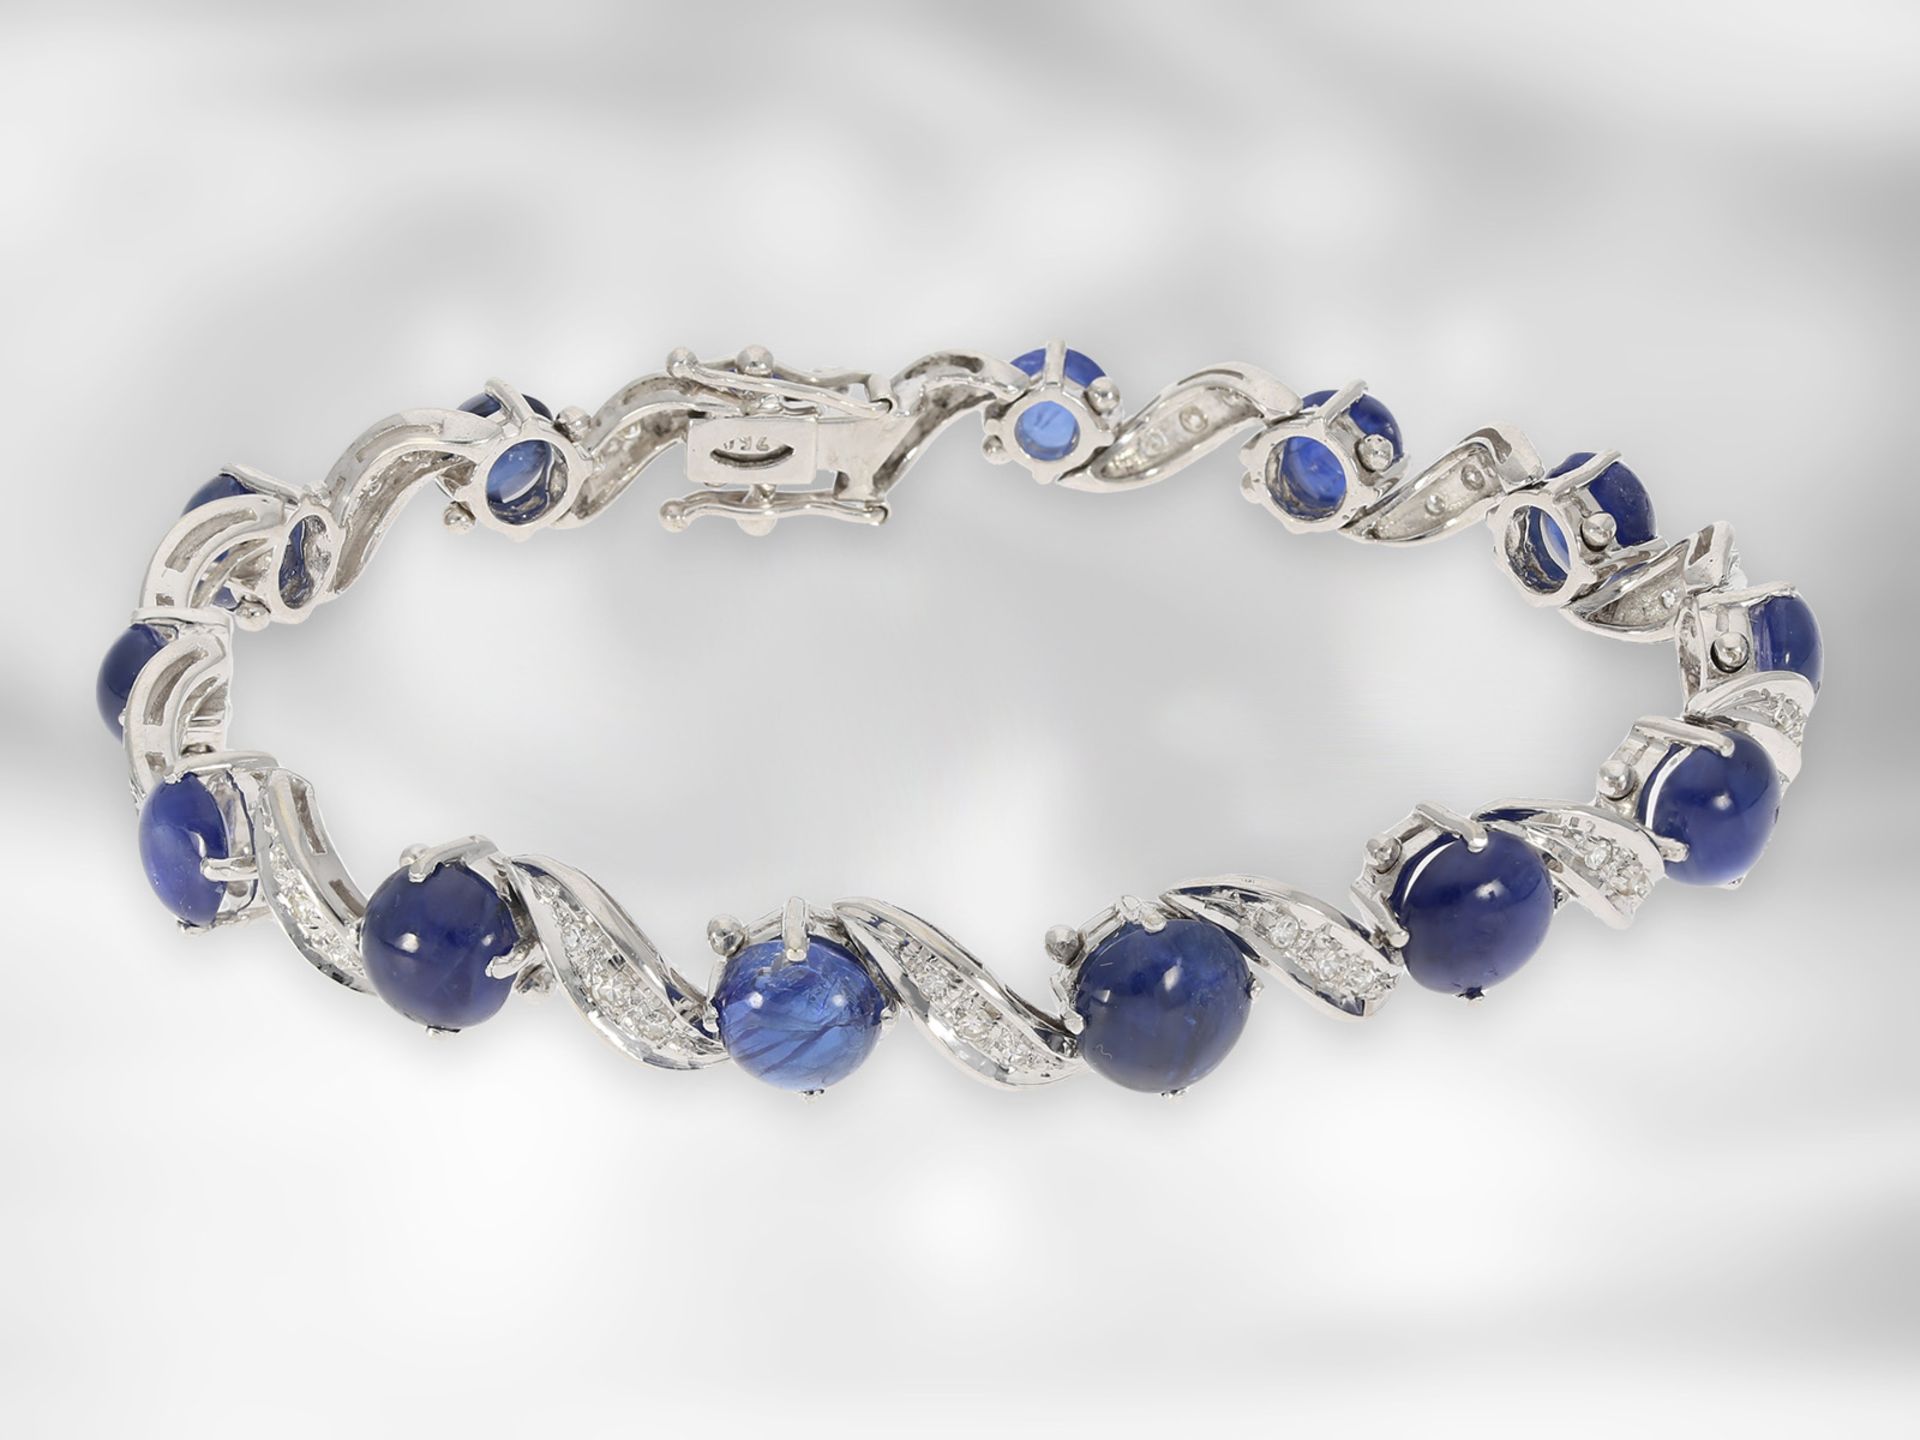 Bracelet: very decorative vintage sapphire bracelet with diamonds, 18K white gold